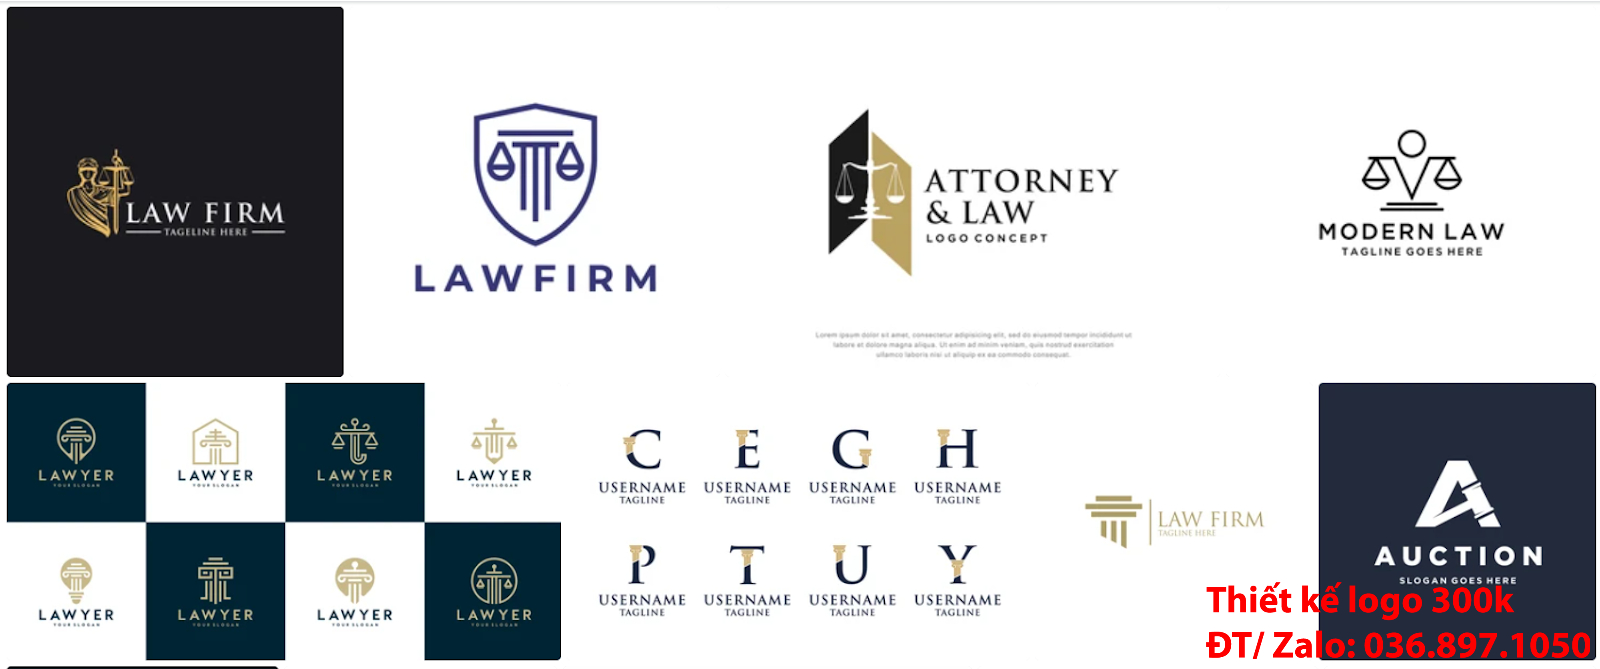 Đơn vị cung cấp dịch vụ tạo Mẫu logo công ty luật sư đẹp giá rẻ chất lượng từ 300k đến 500k